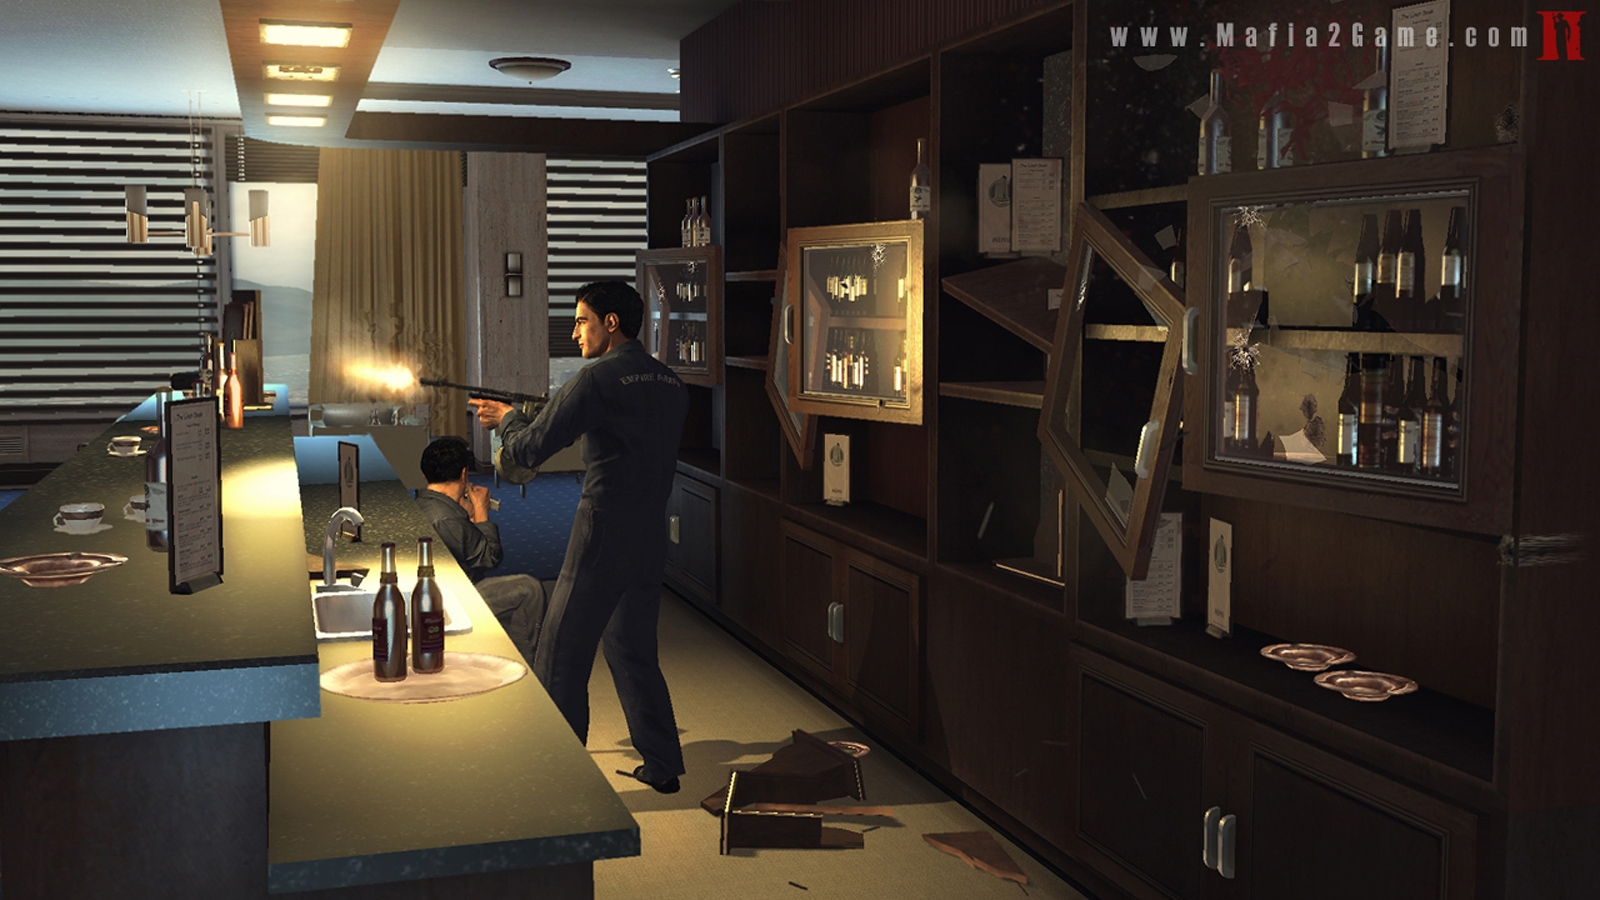 Скриншот из игры Mafia 2 под номером 24